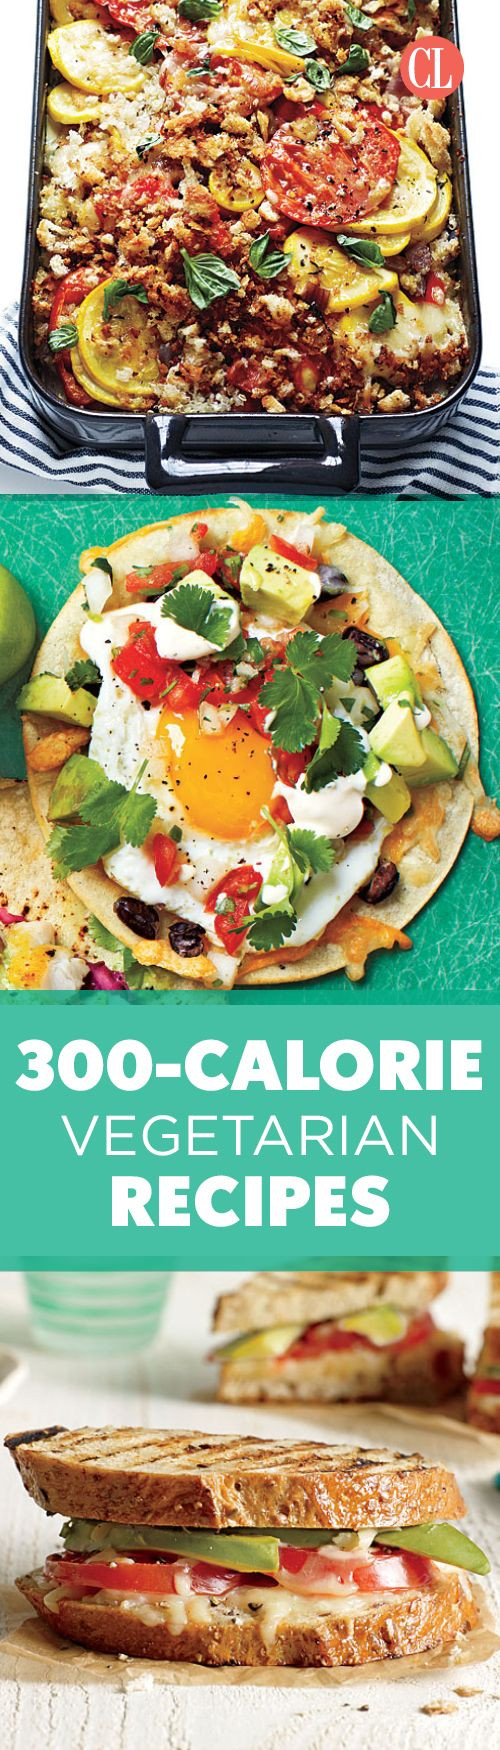 Low Calorie Vegan Recipes
 Best 25 Low calorie ve arian recipes ideas on Pinterest